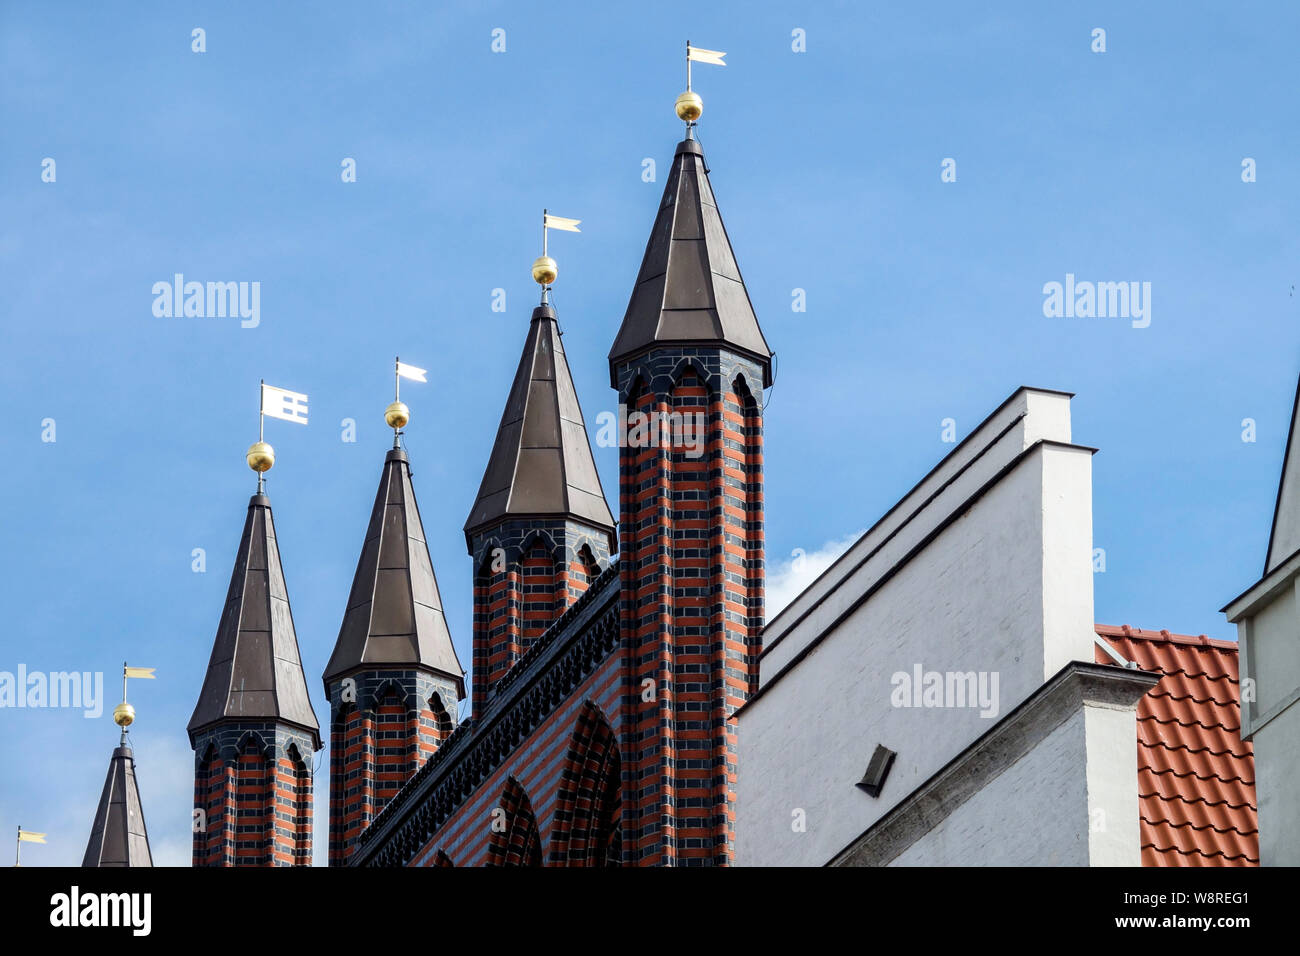 Germany Rostock, ancien hôtel de ville historique, détail de la façade de l'Allemagne Banque D'Images